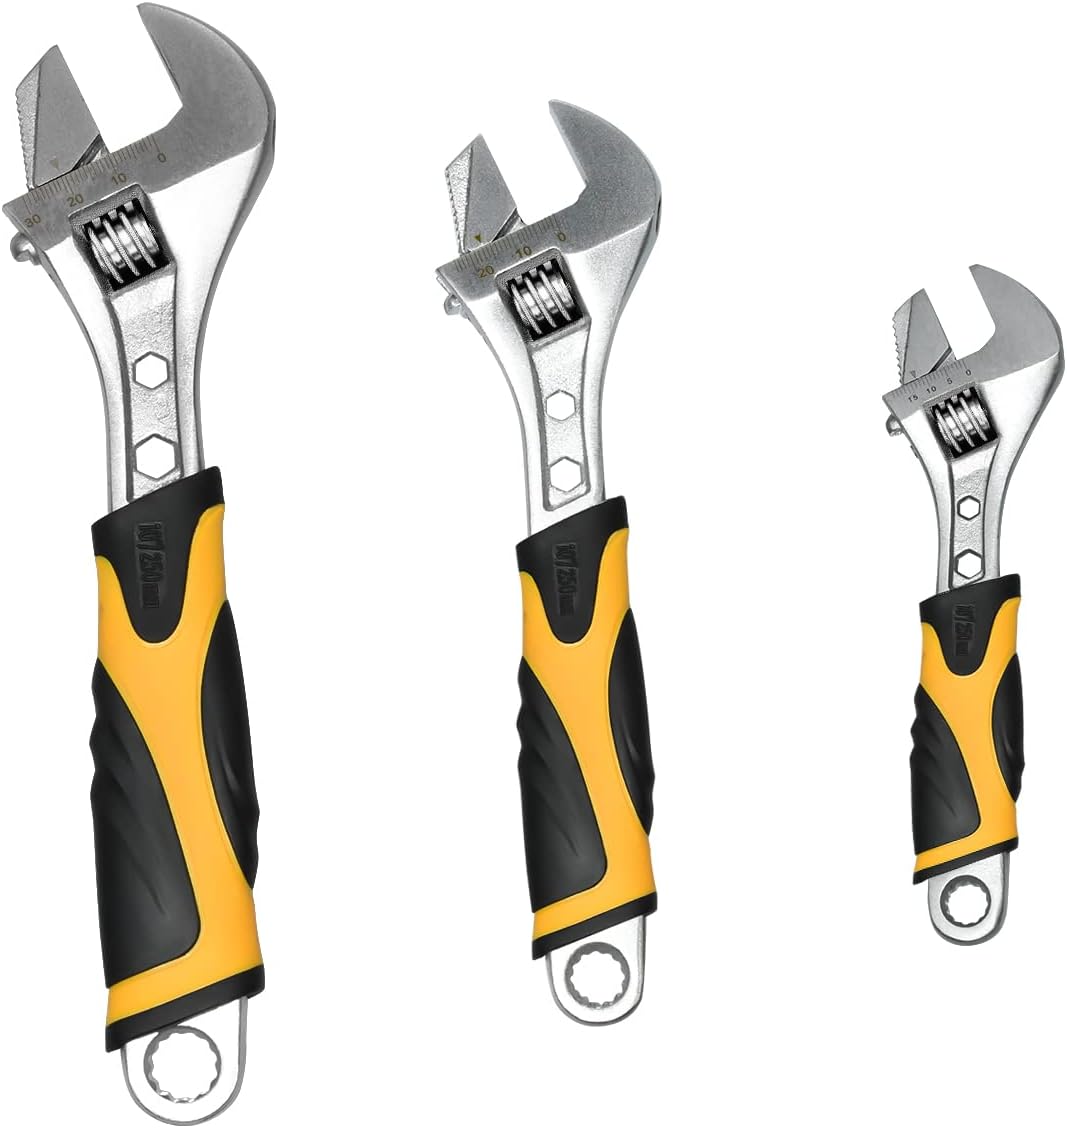 ZUZUAN 3-piece Adjustable Wrench Set High Carbon Steel [...]